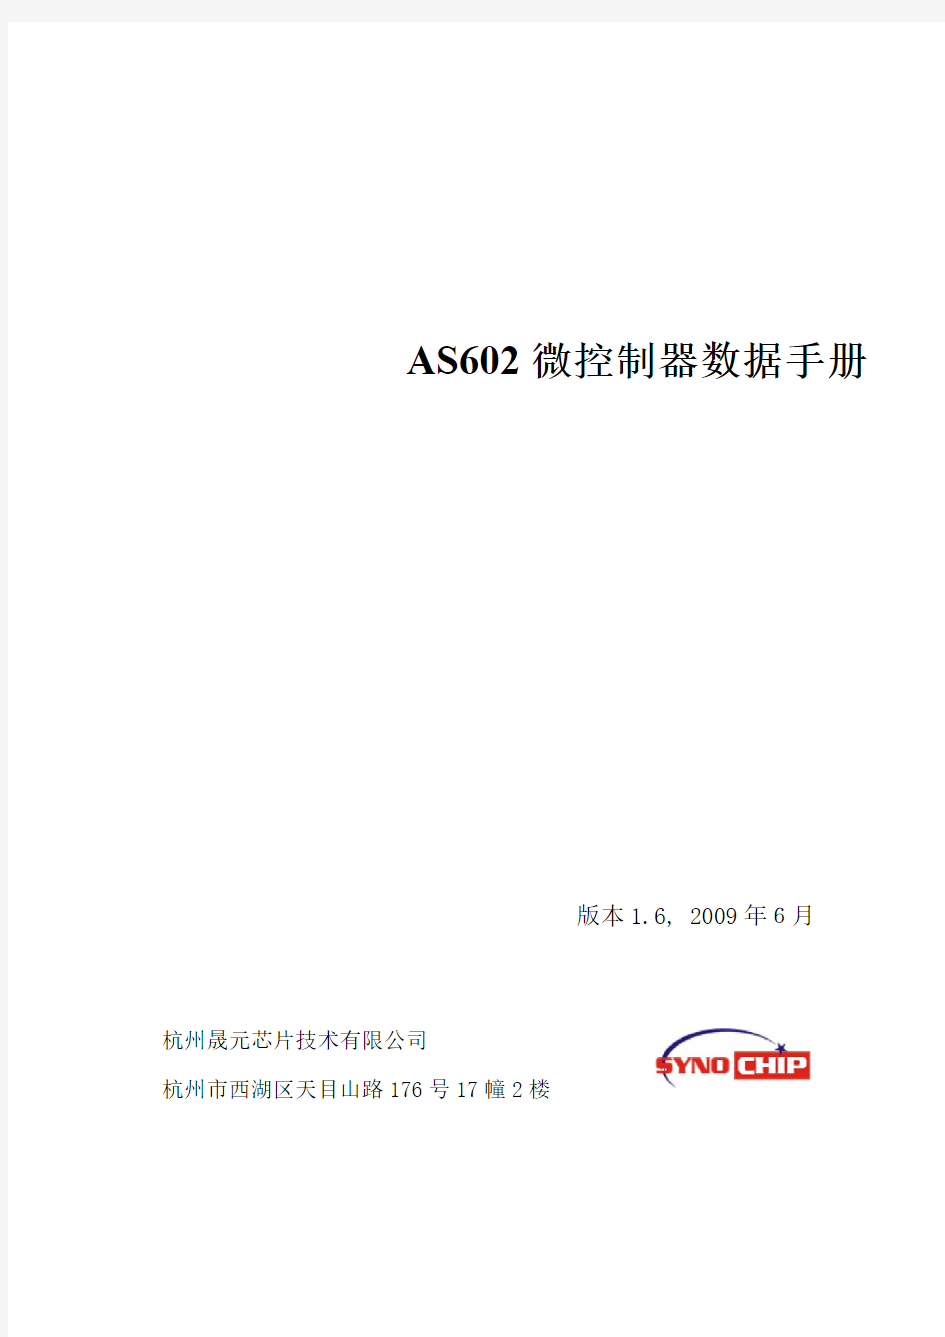 AS602微控制器数据手册_V1.6